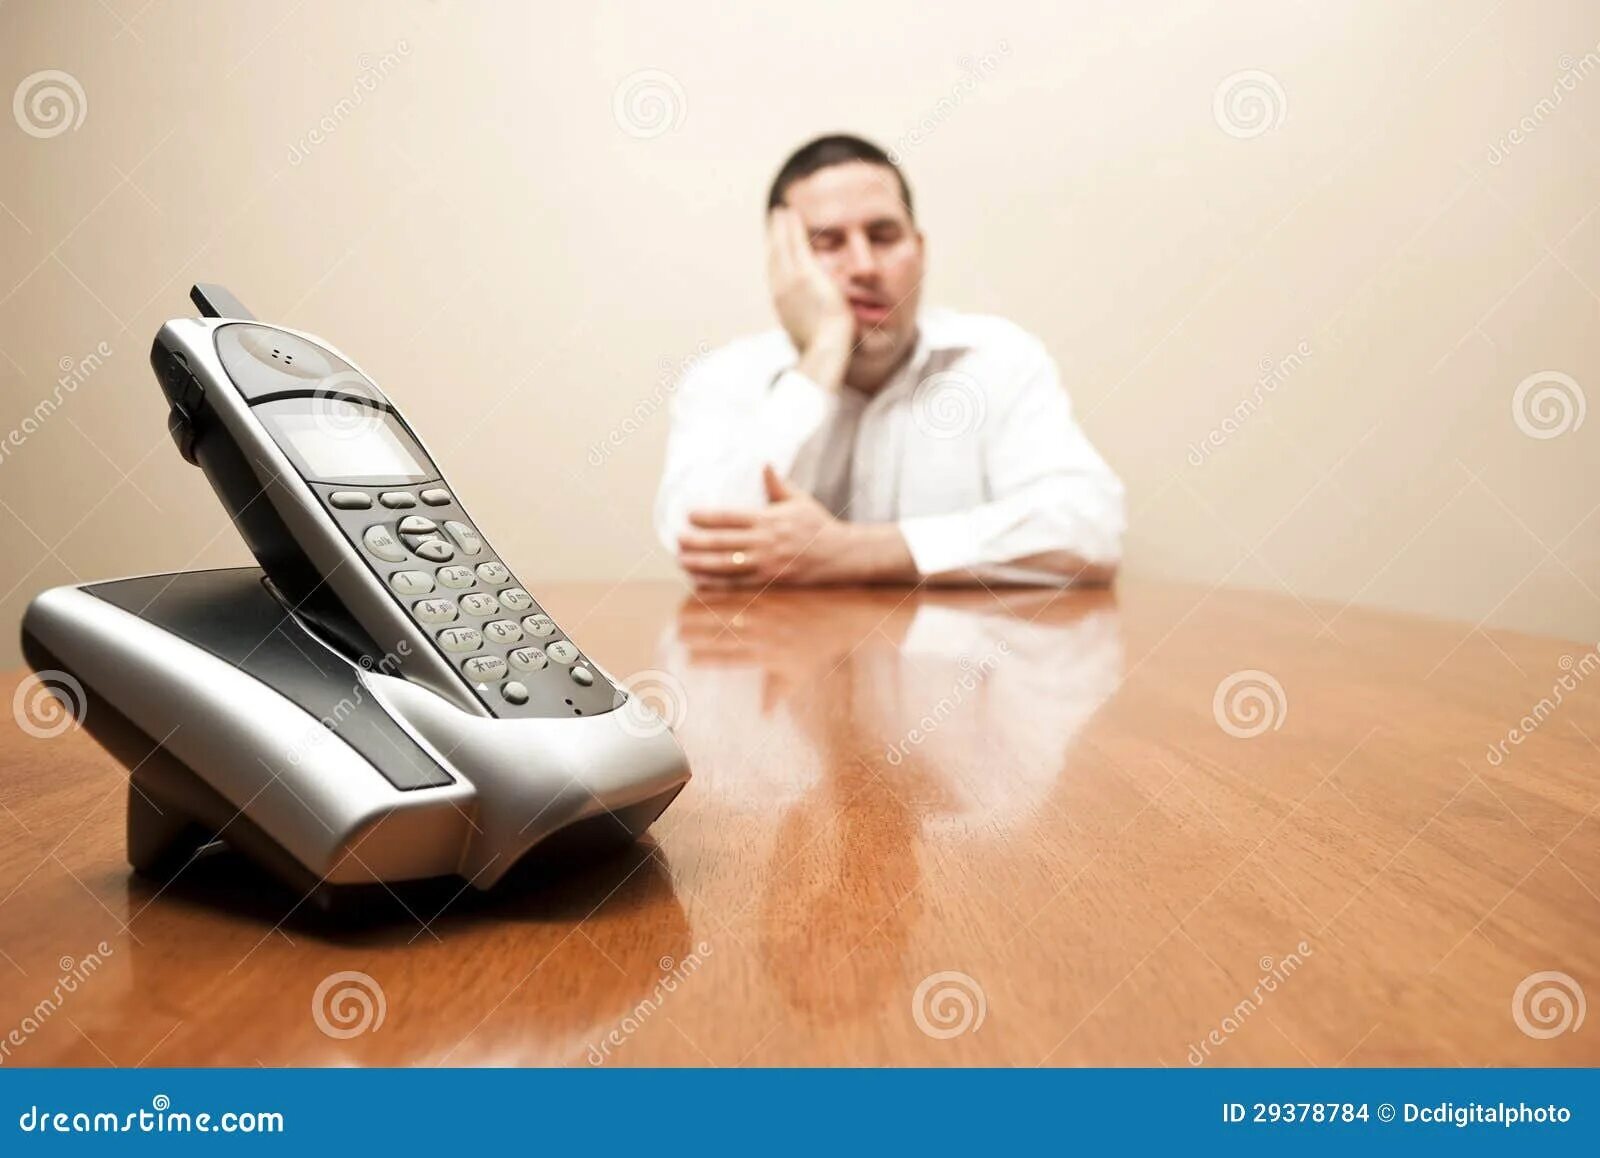 Человек ждет звонка. Парень ждет звонка. Человек ждет у телефона. Фото жду звонка.